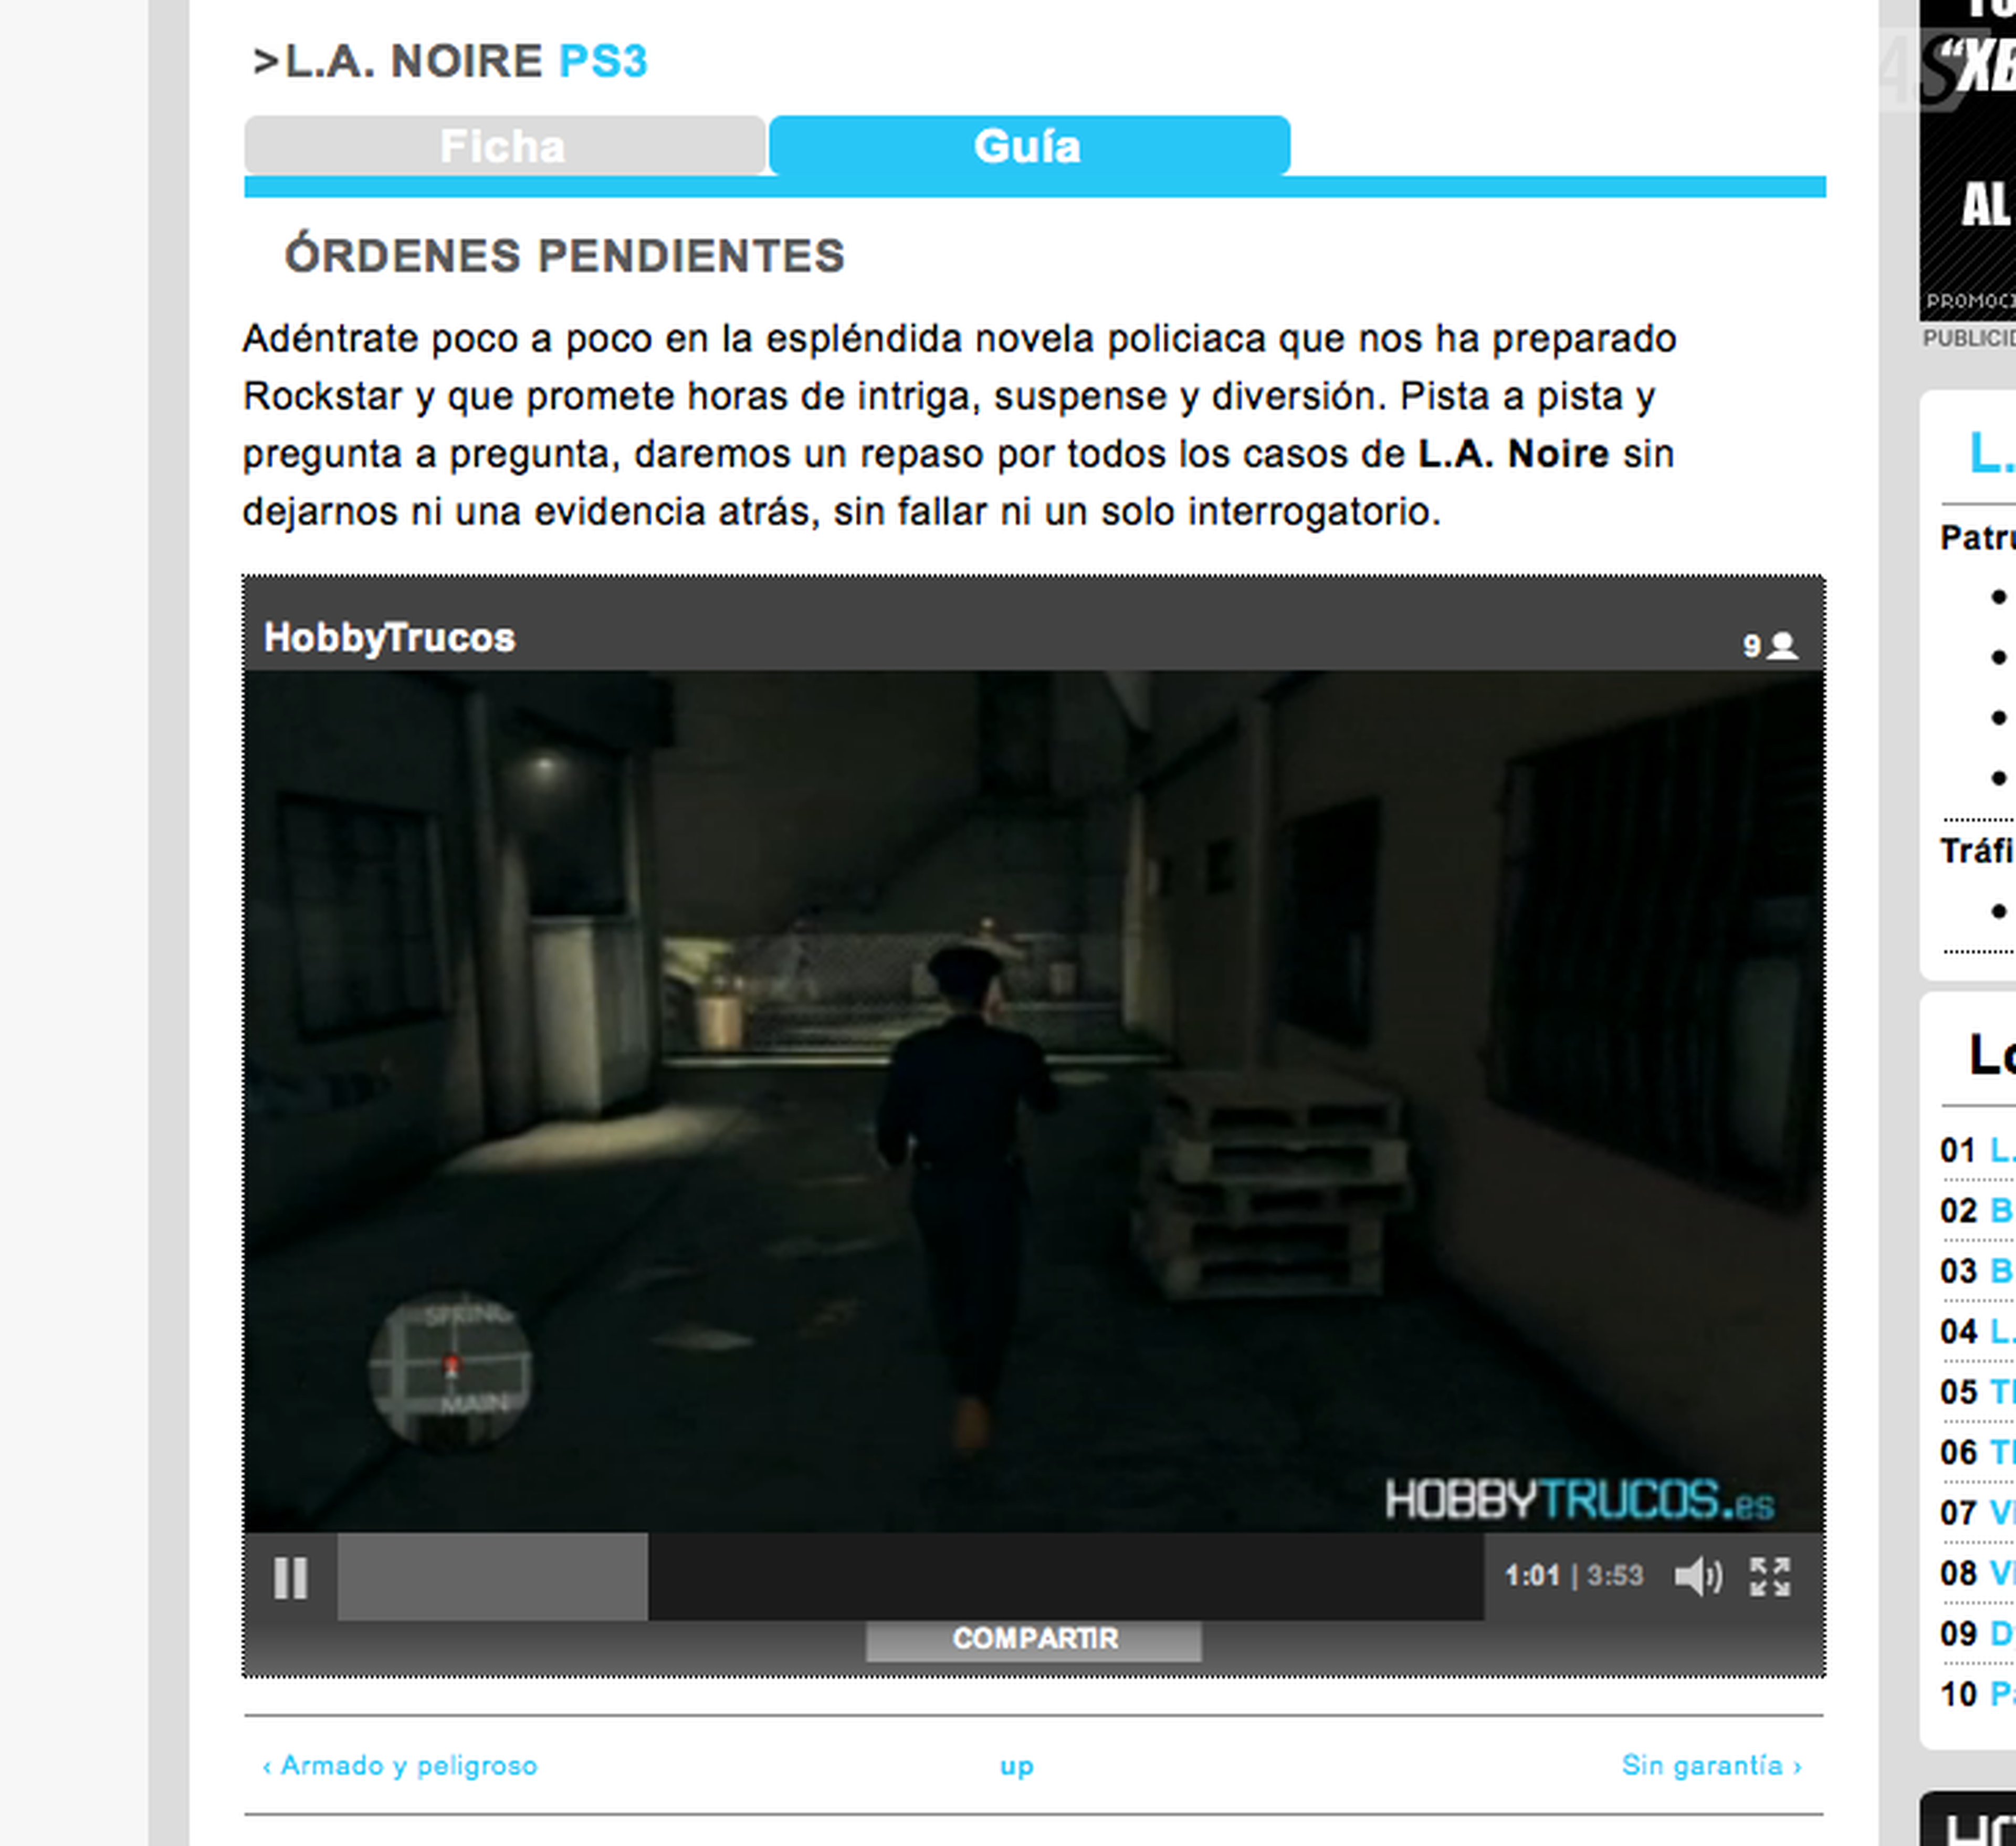 L.A. Noire: Guía en vídeo en HobbyTrucos